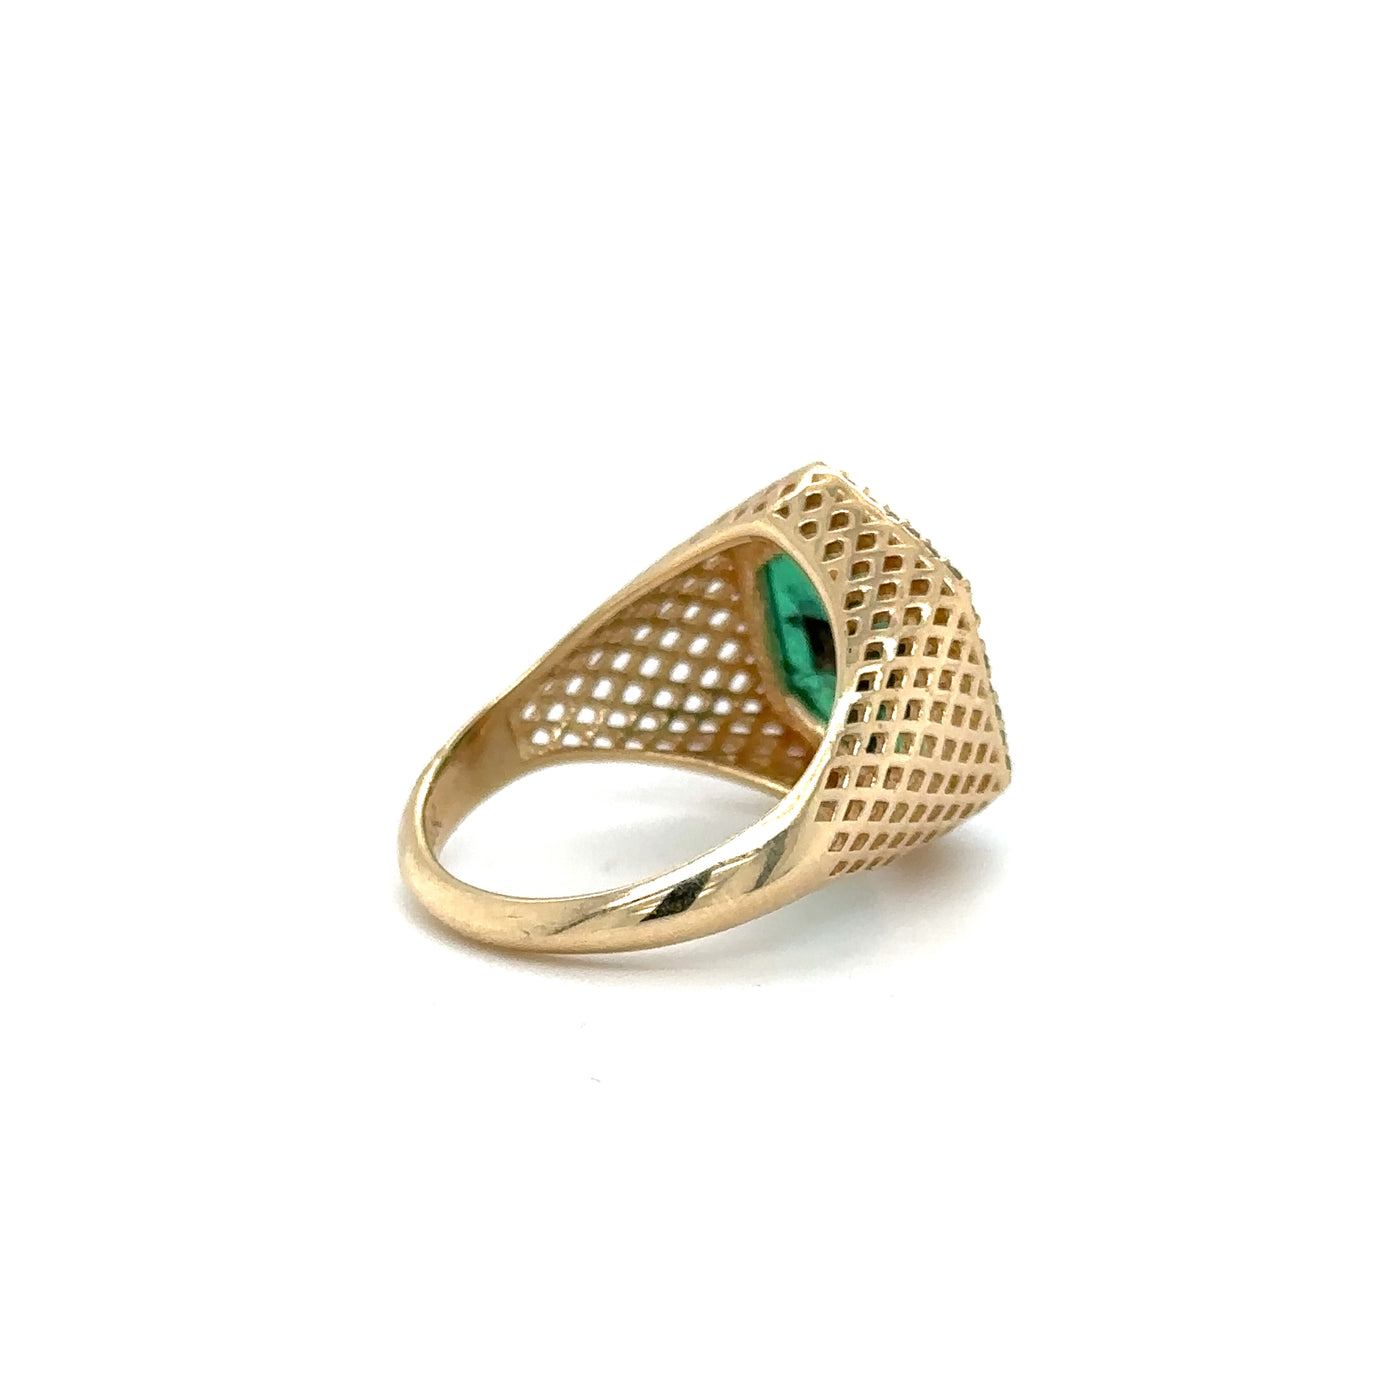 Trapiche Emerald & Diamond “Finn” Ring